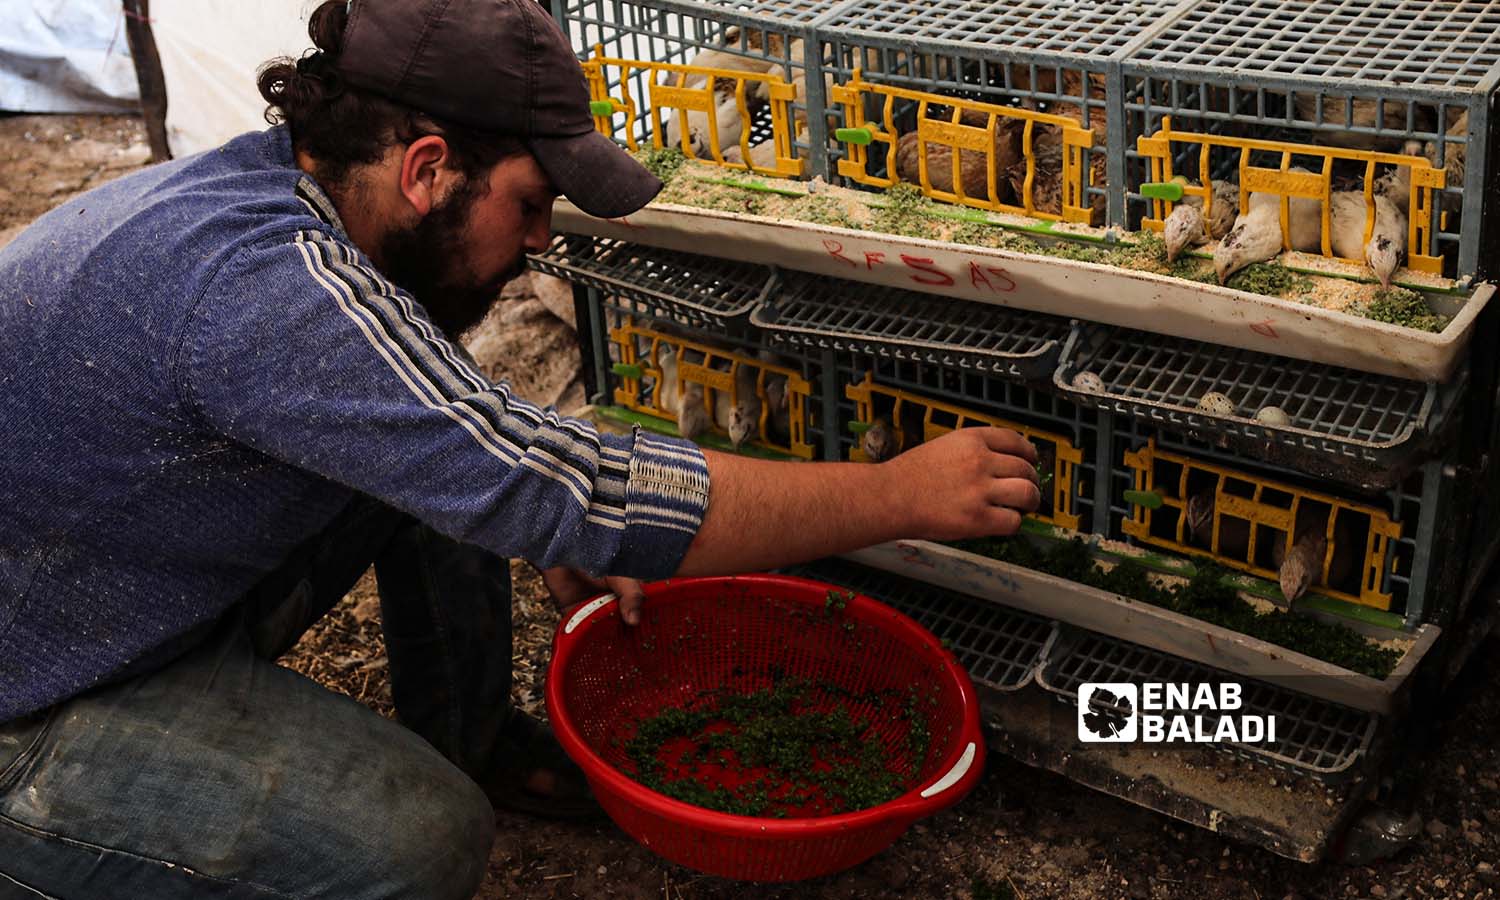 رجل يستخدم نبات الأزولا كعلف للدواجن والحيوانات في منطقة عفرين بريف حلب الشمالي - 30 أيلول 2022 (عنب بلدي / أمير خربطلي)